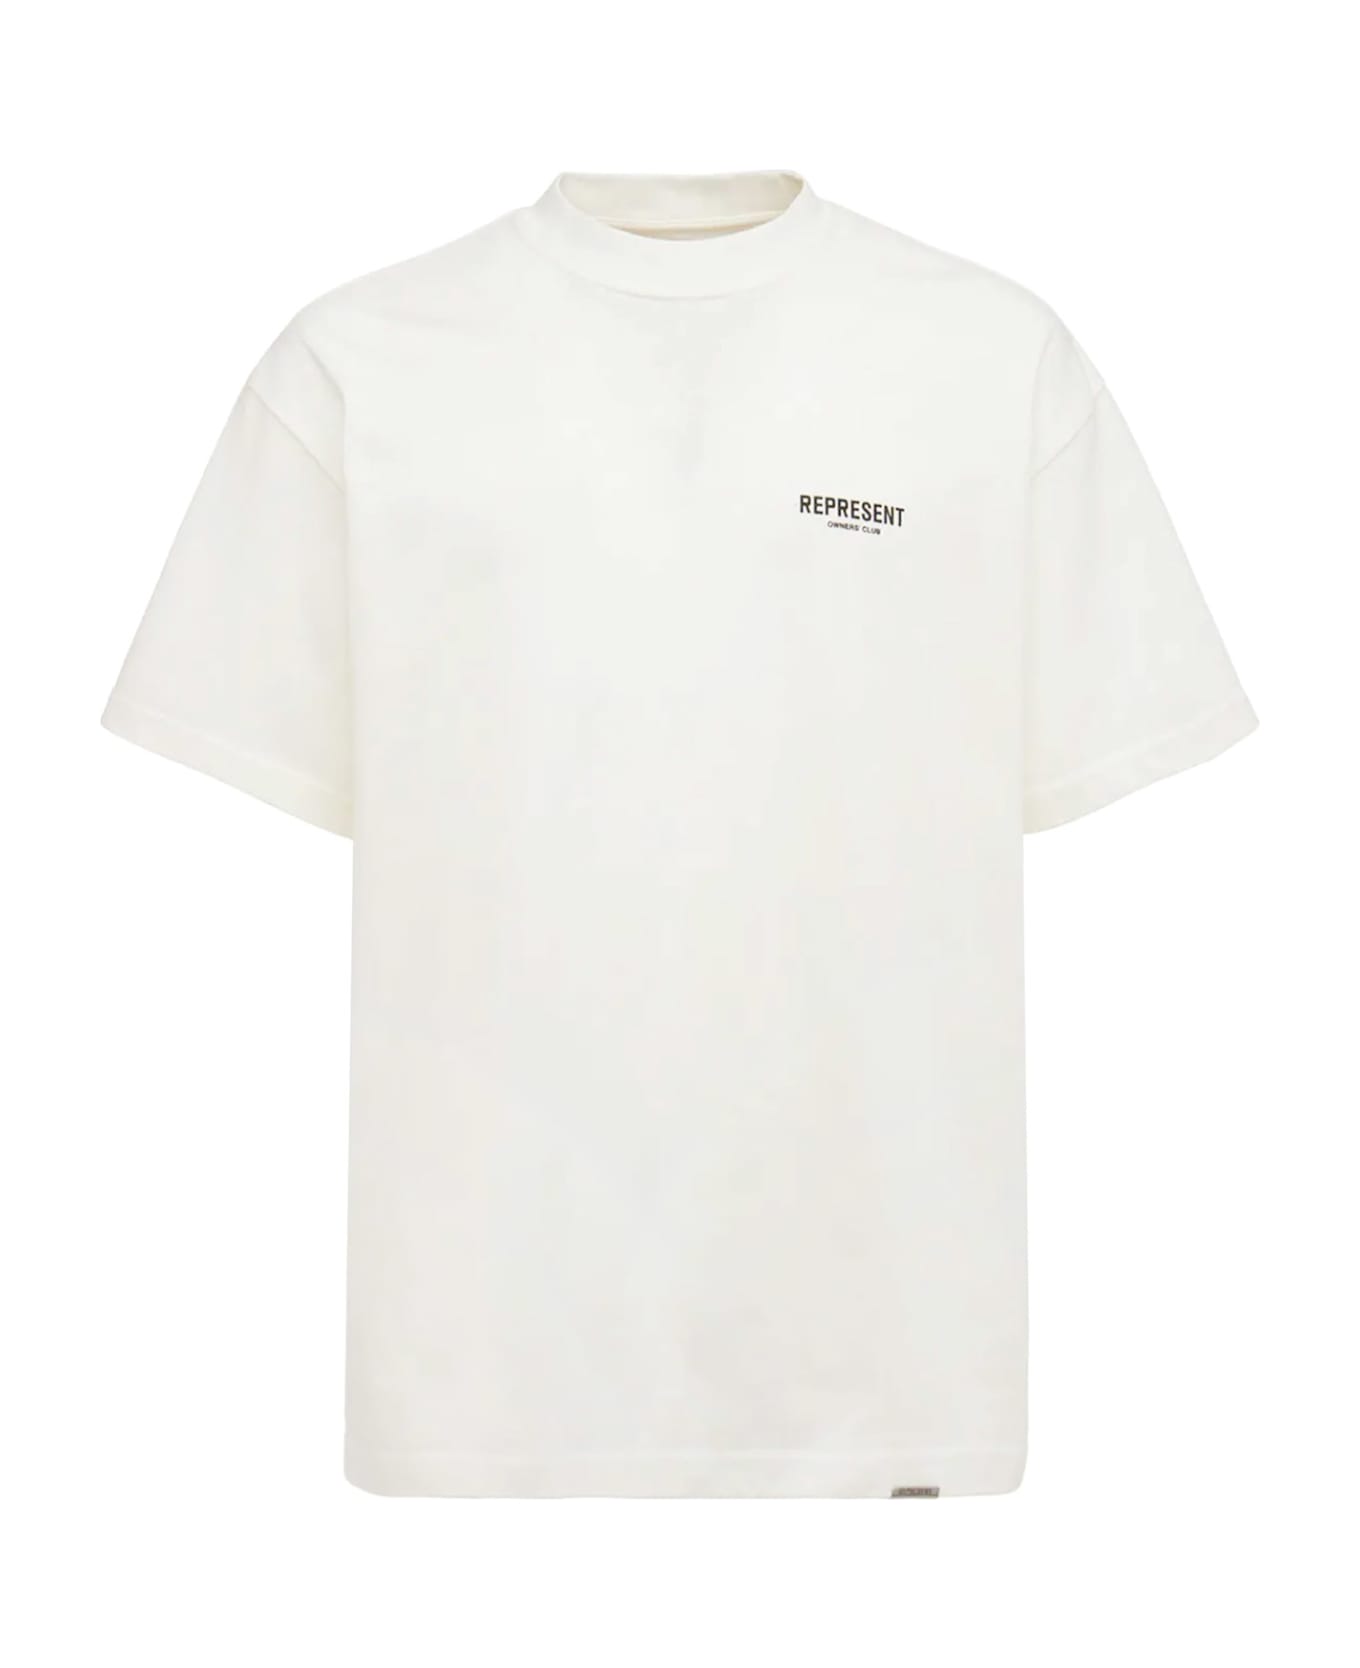 REPRESENT T-shirt - Flat white シャツ